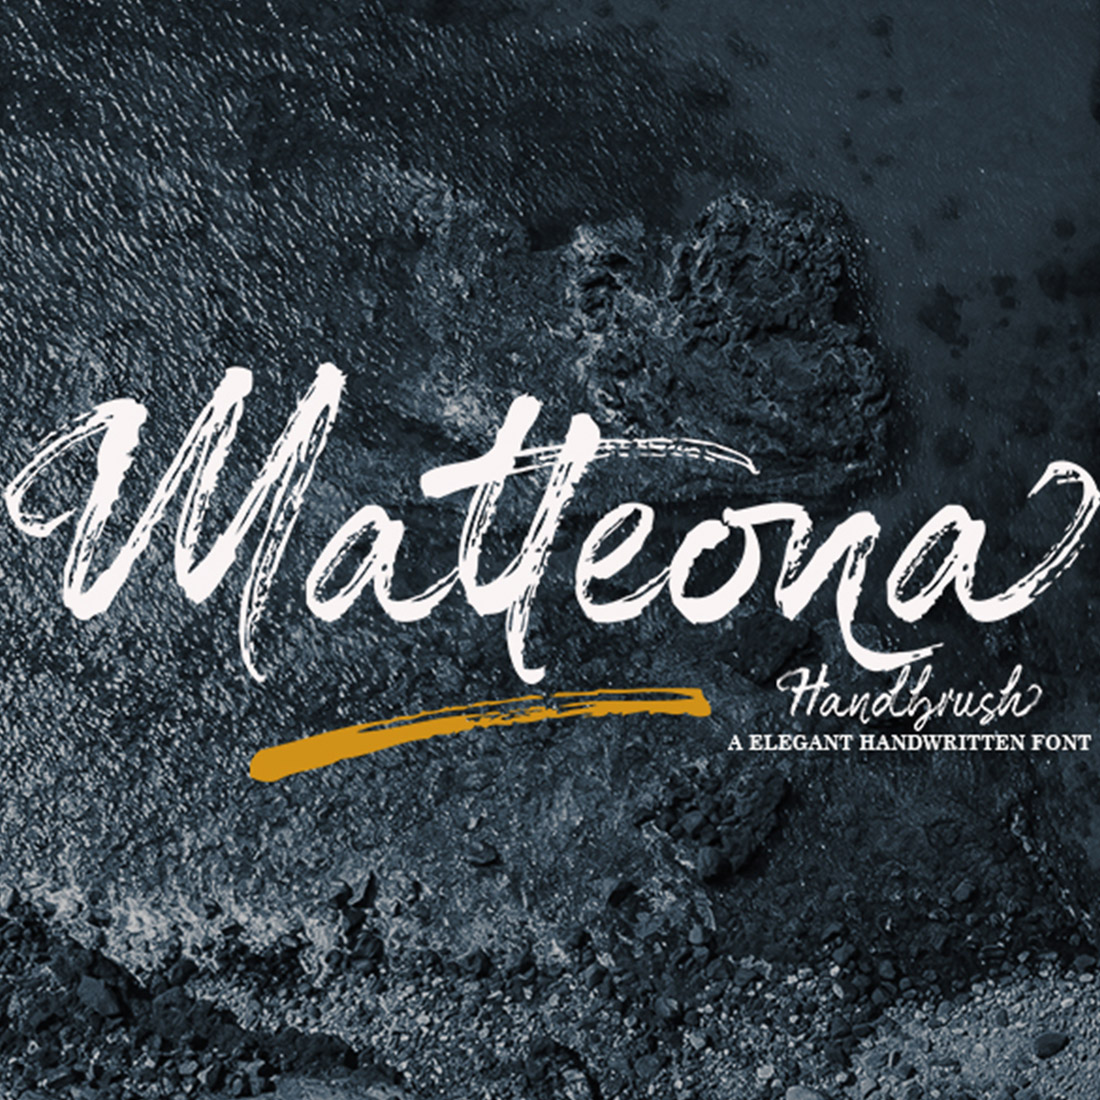 Matteona - Handbrush cover image.